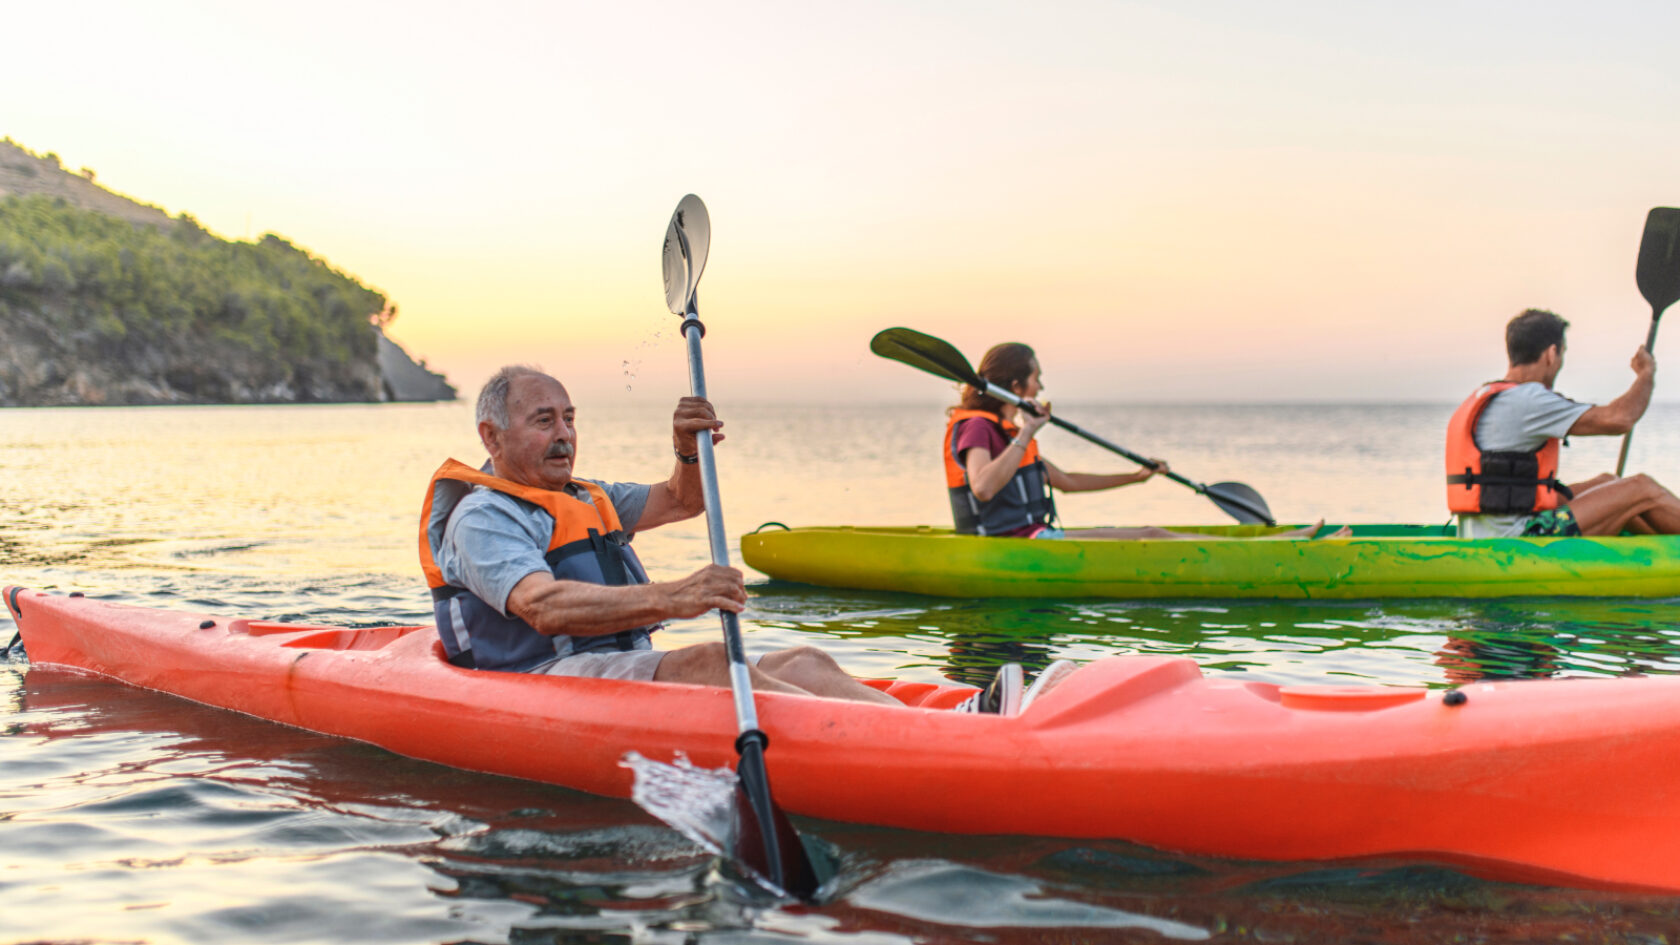 Un hombre anda en kayak y usa un dispositivo de flotación personal.